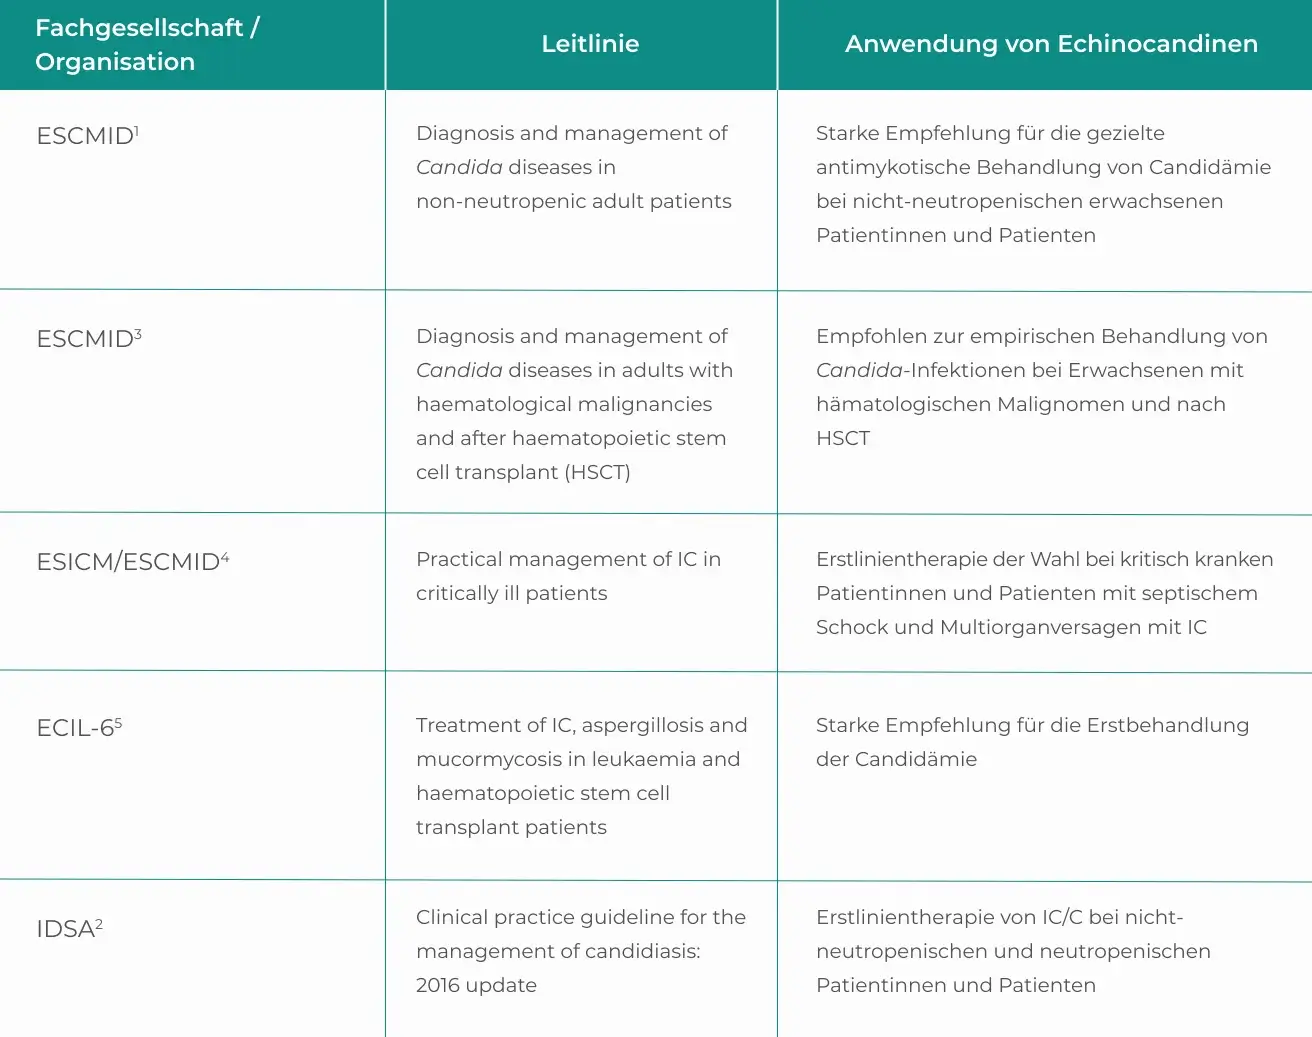 Zusammenfassung der Leitlinienempfehlungen für den Einsatz von Echinocandinen